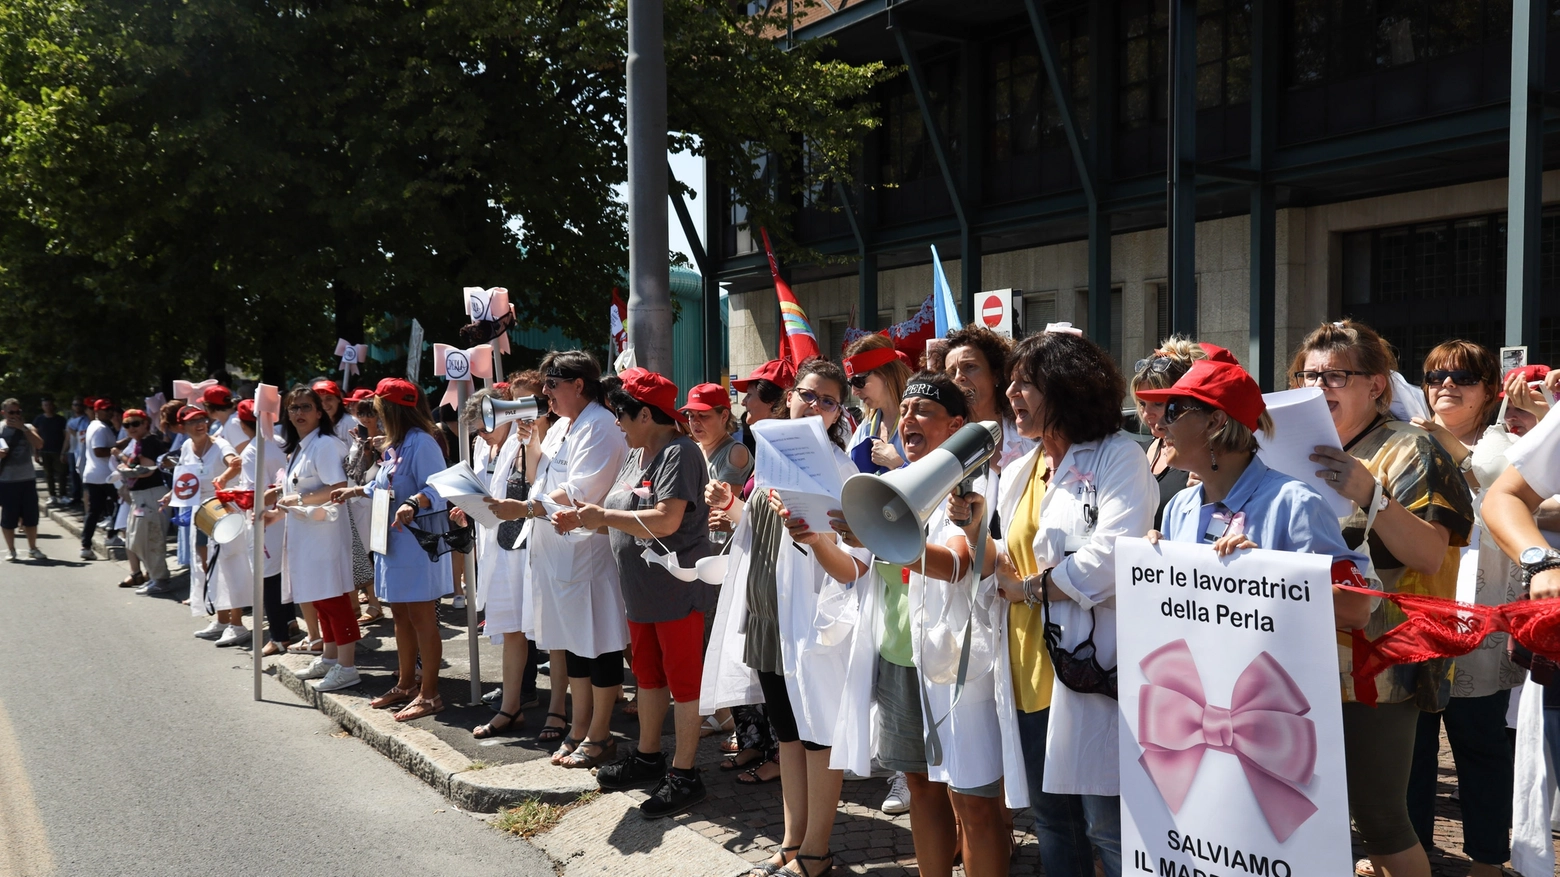 La protesta dei dipendenti davanti alla sede della Perla (foto Schicchi)